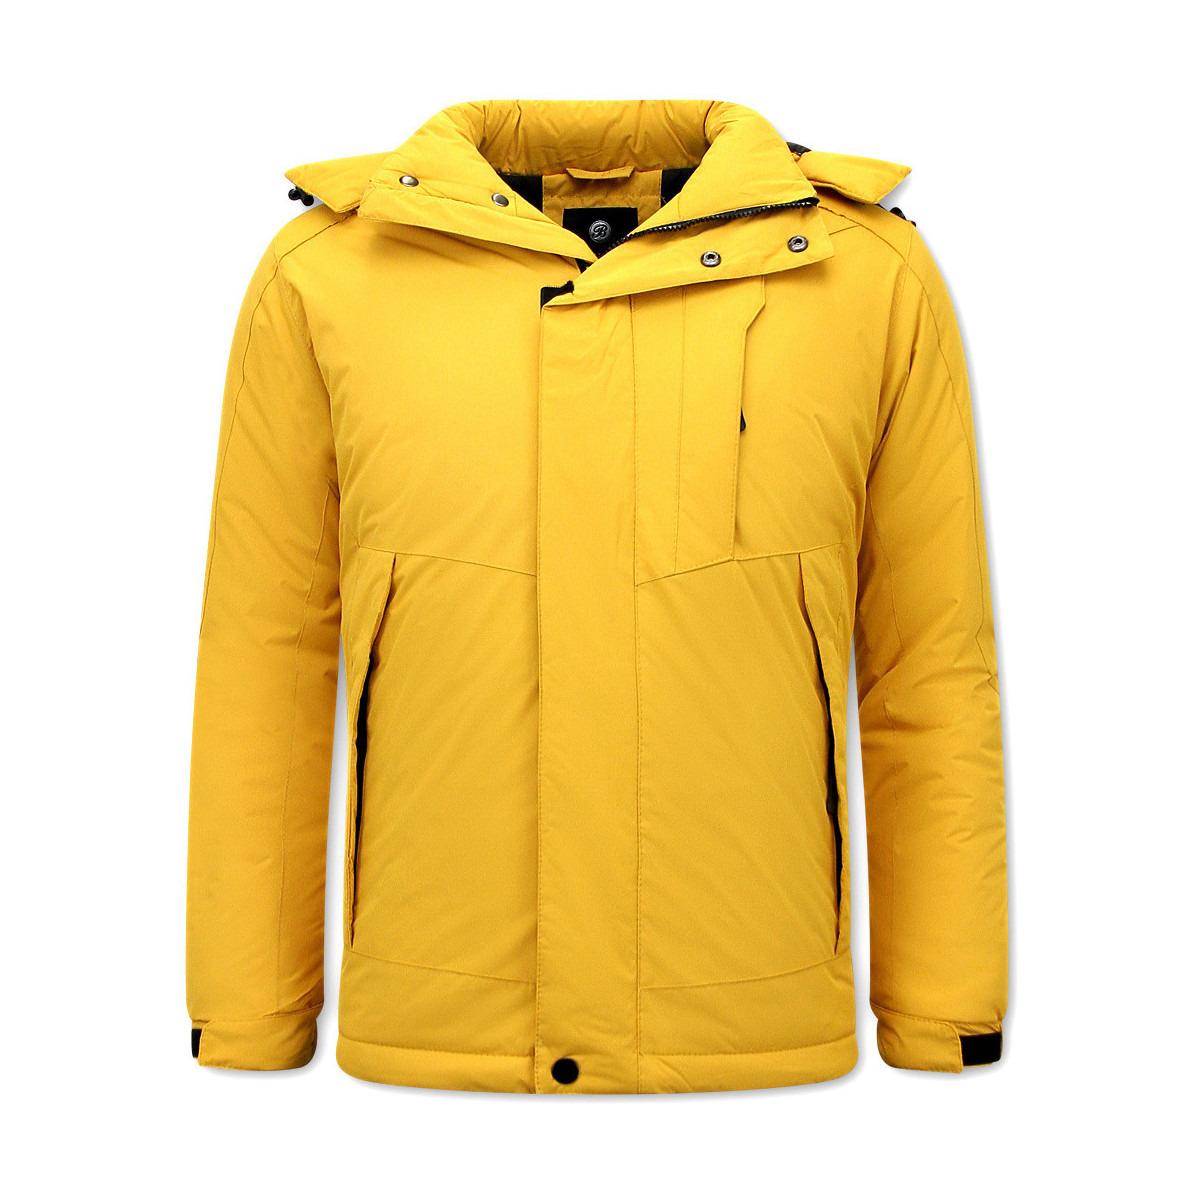 Beluomo Yellow Winter Jacket Spartoo Man GOOFASH